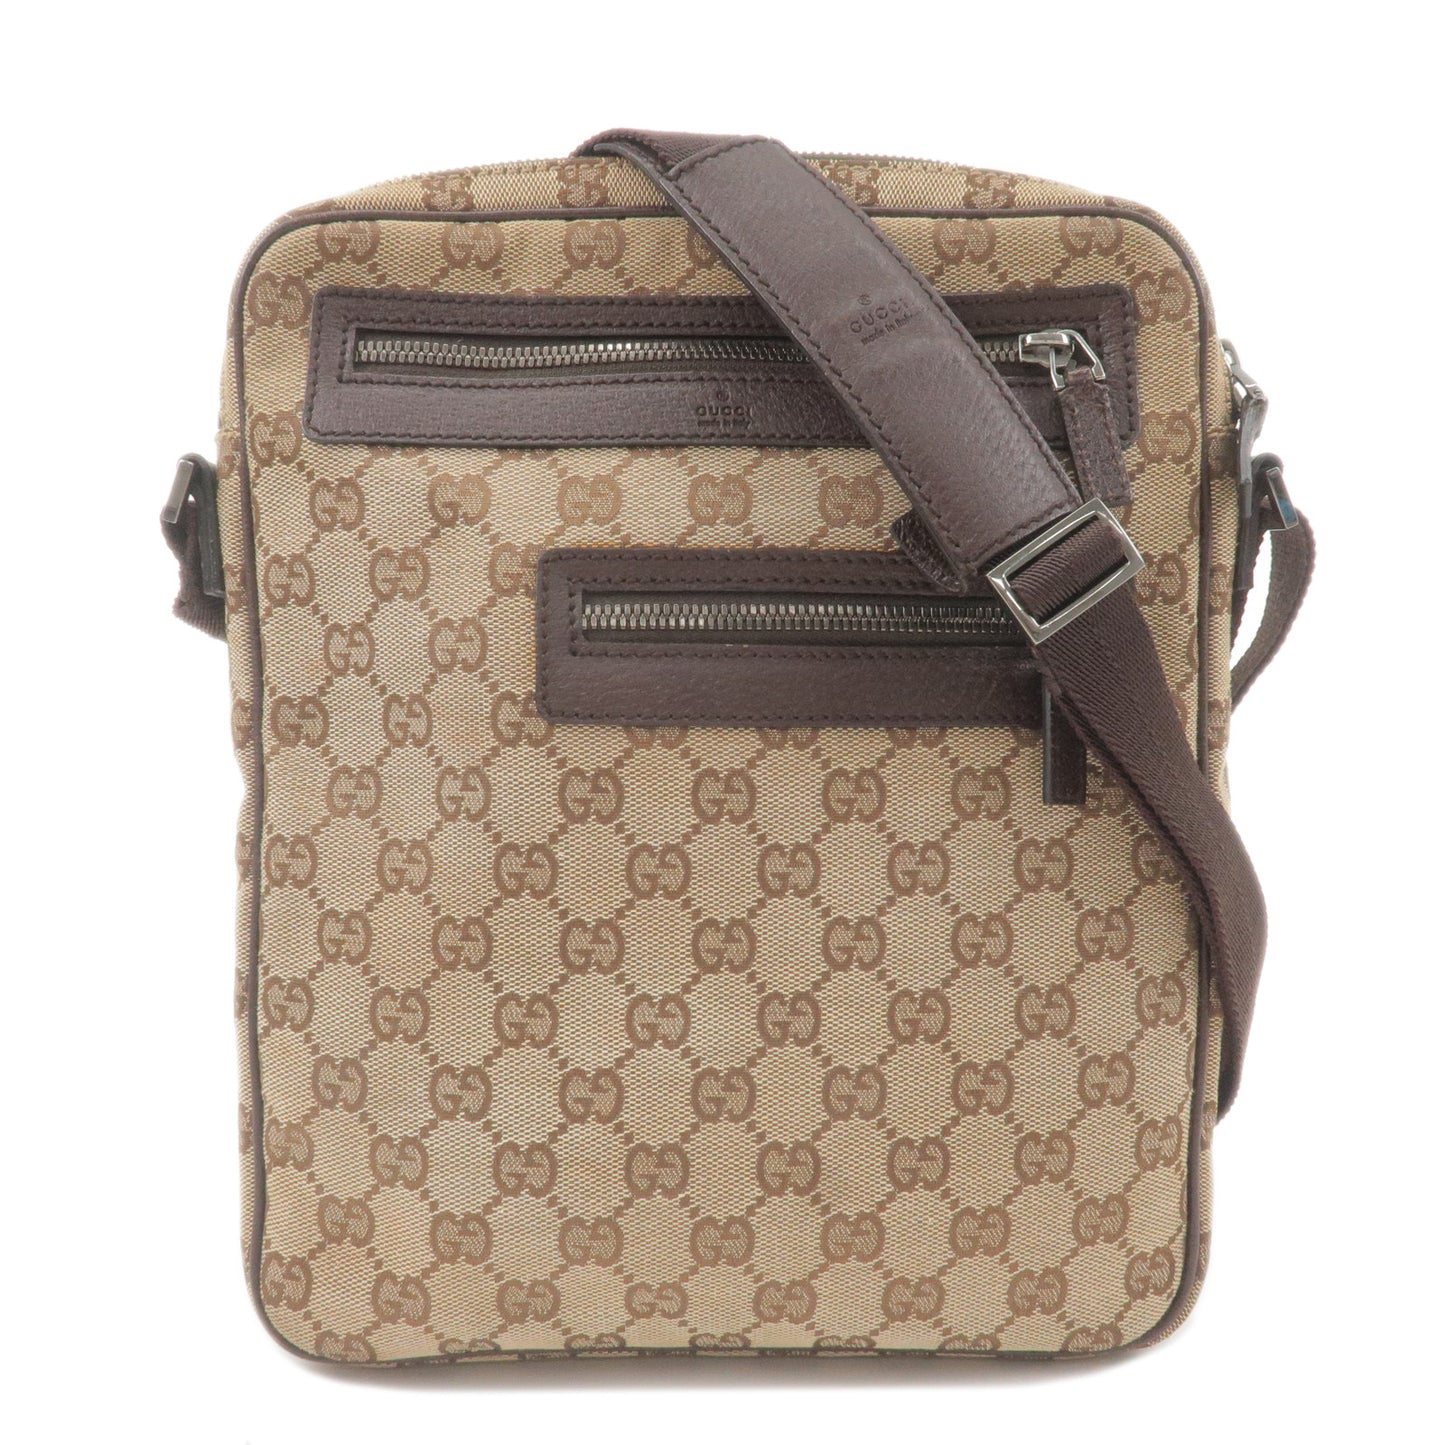 GUCCI-GG-Canvas-Leather-Shoulder-Bag-Crossbody-Bag-Beige-92551